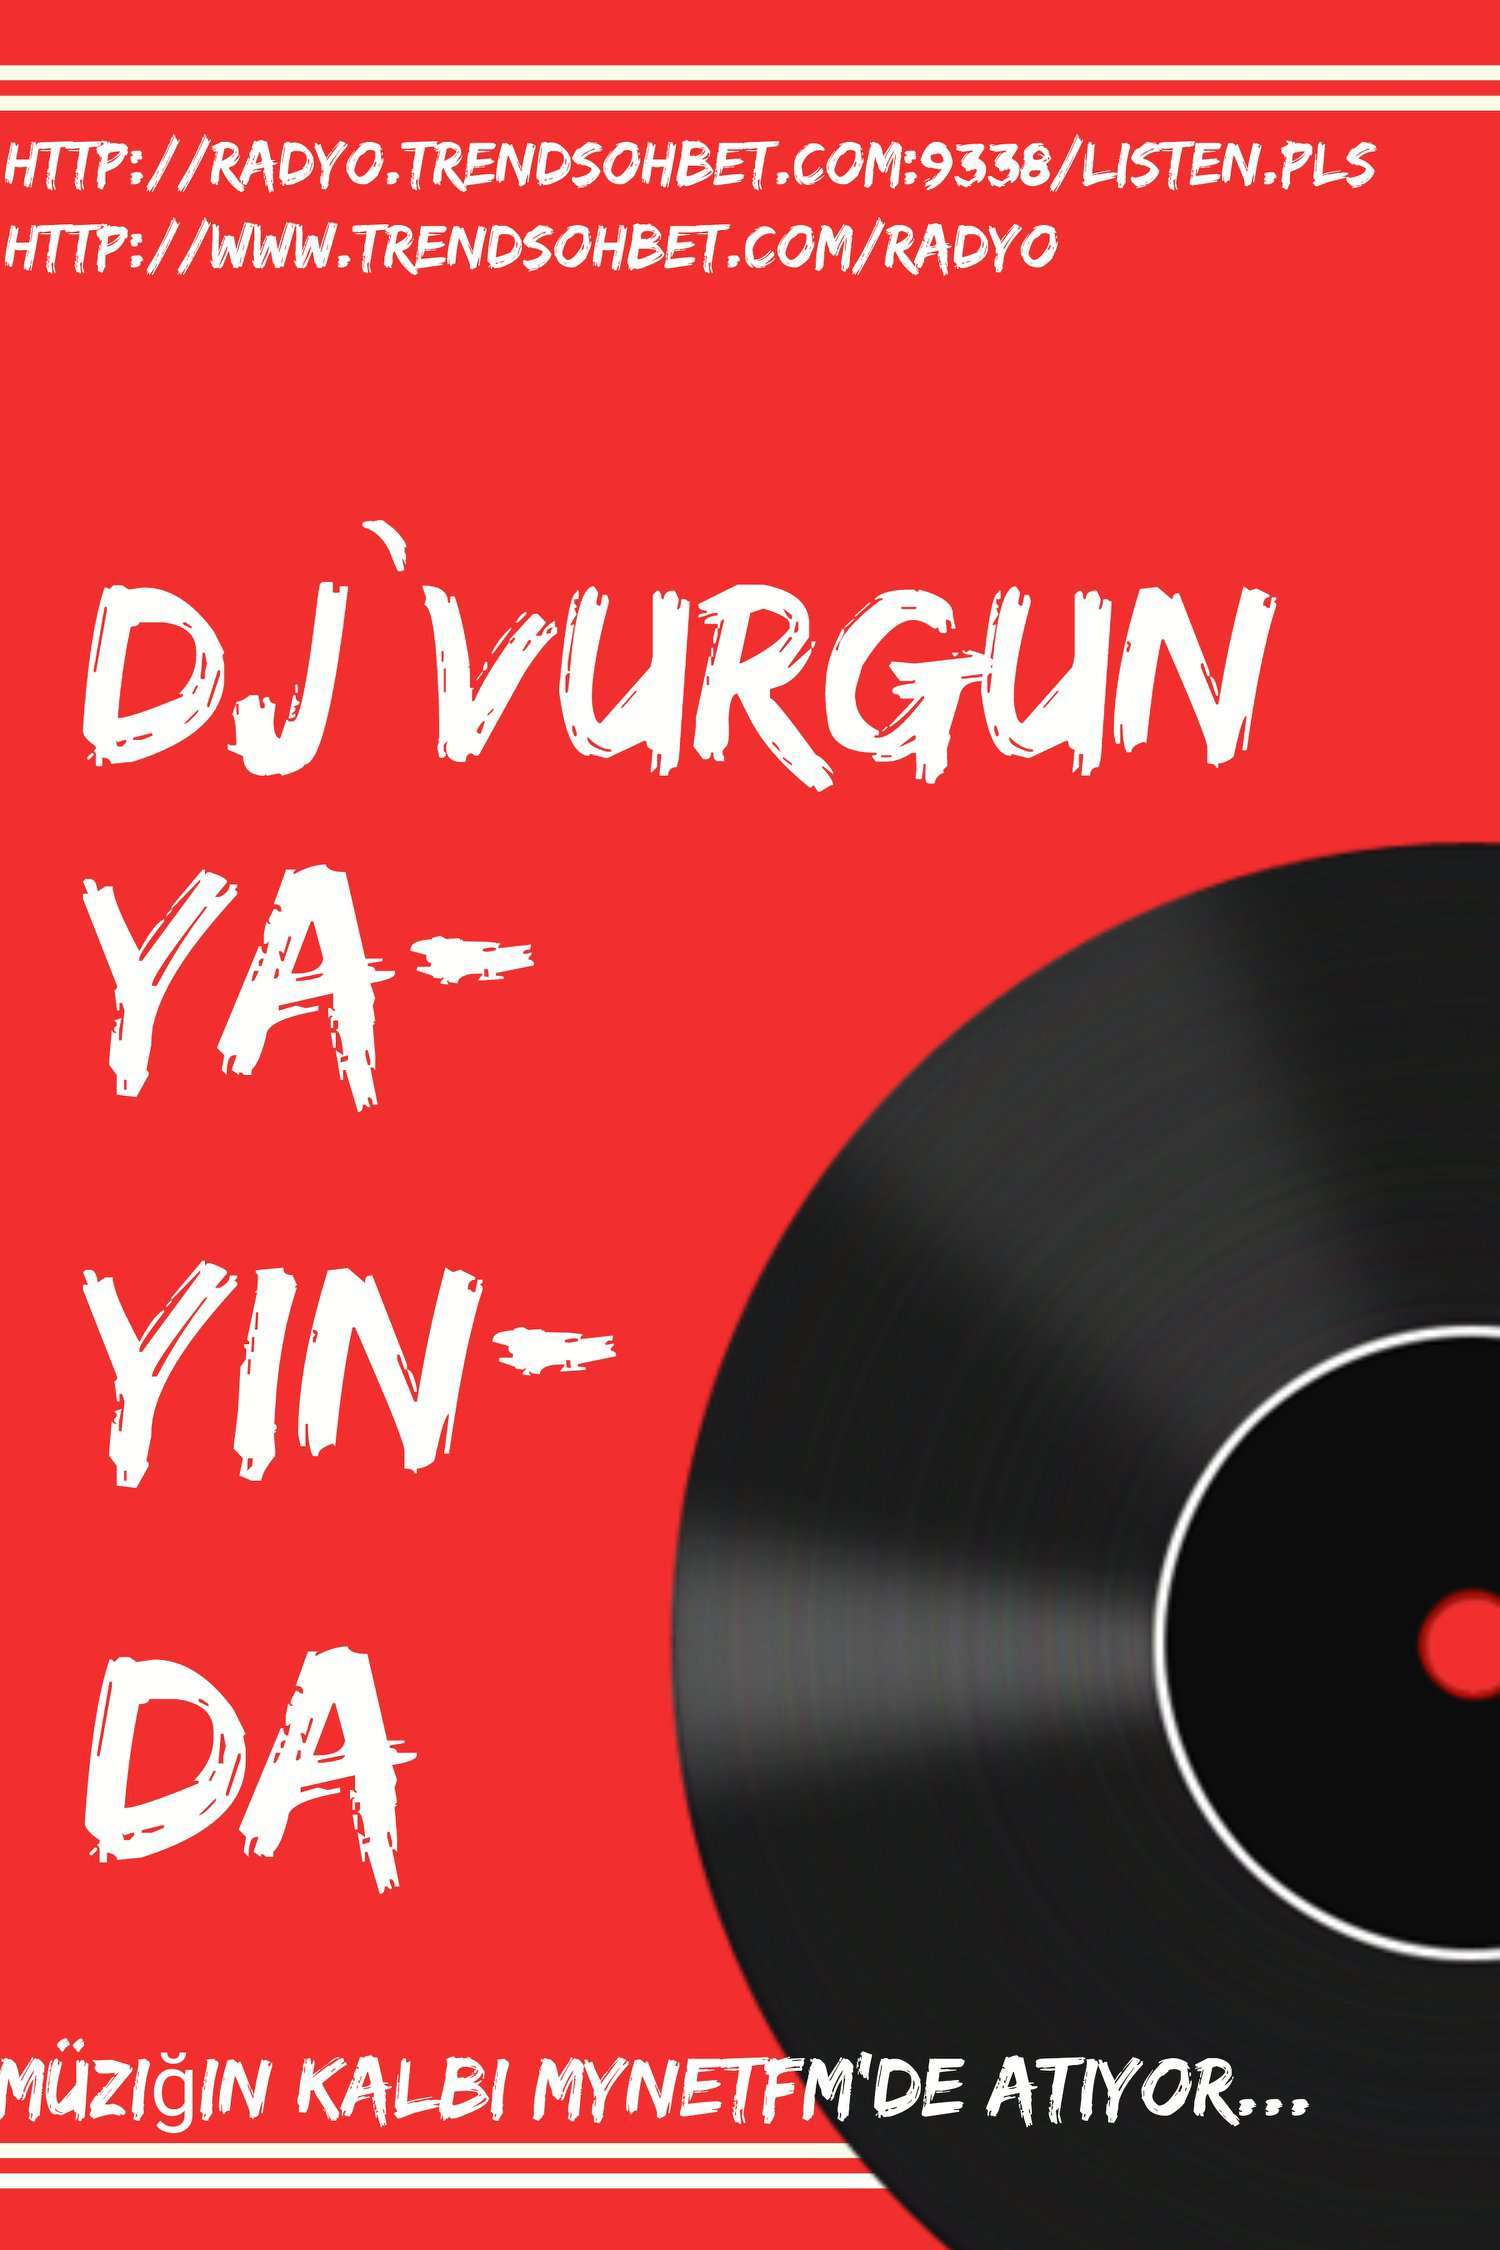 DJ`VurguN yayinda!